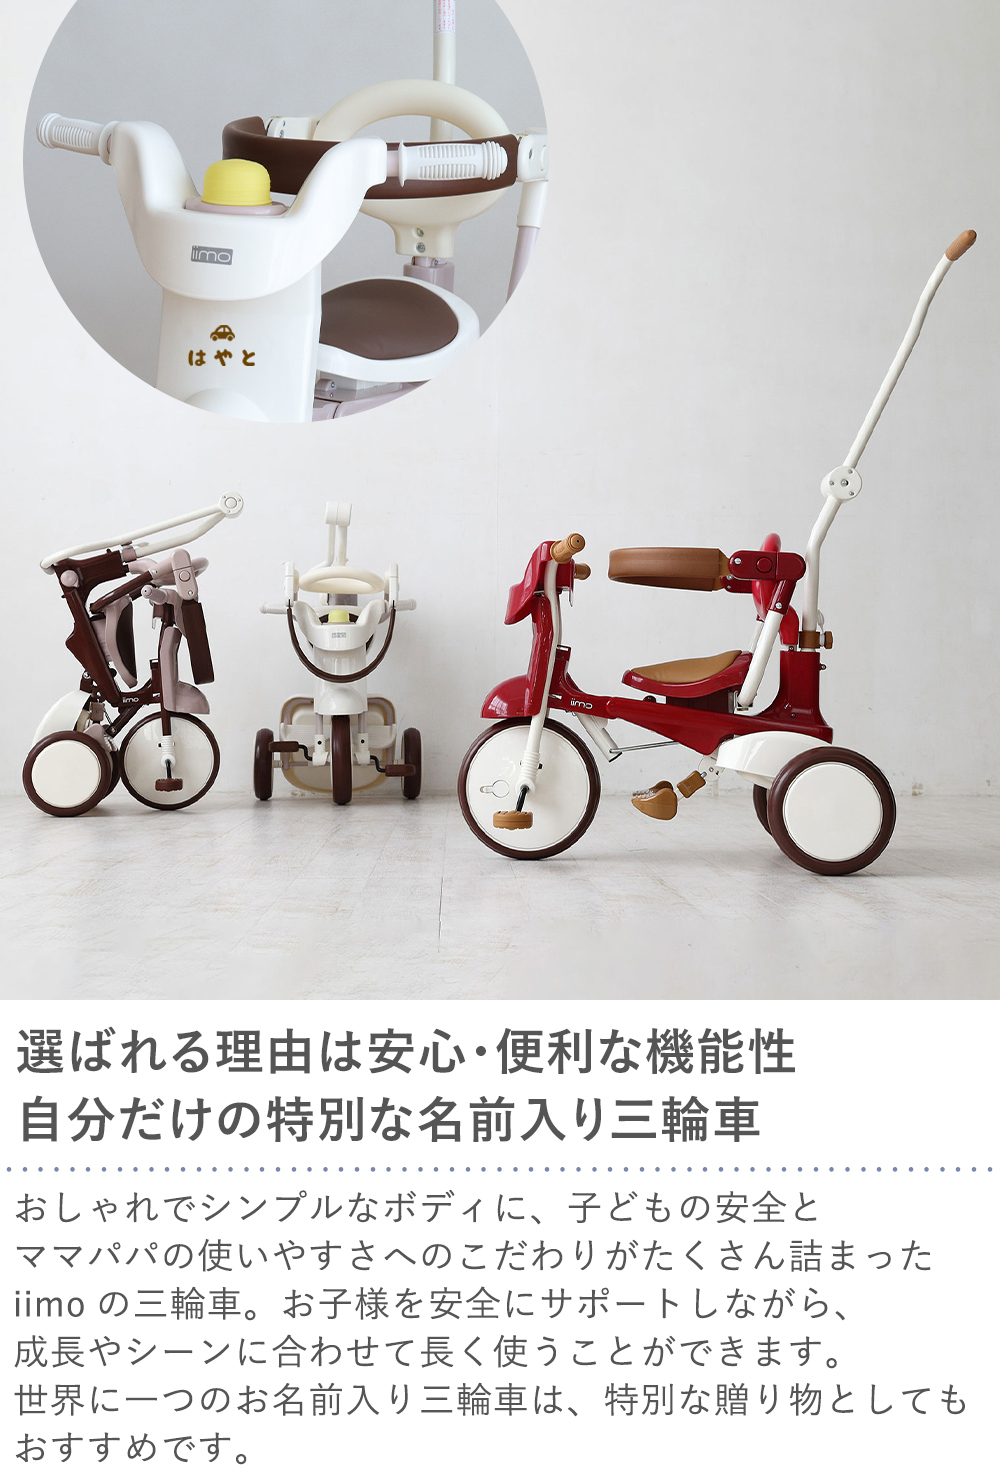 iimo #02 tricycle 三輪車 イーモ コンフォートブラウン 説明書 